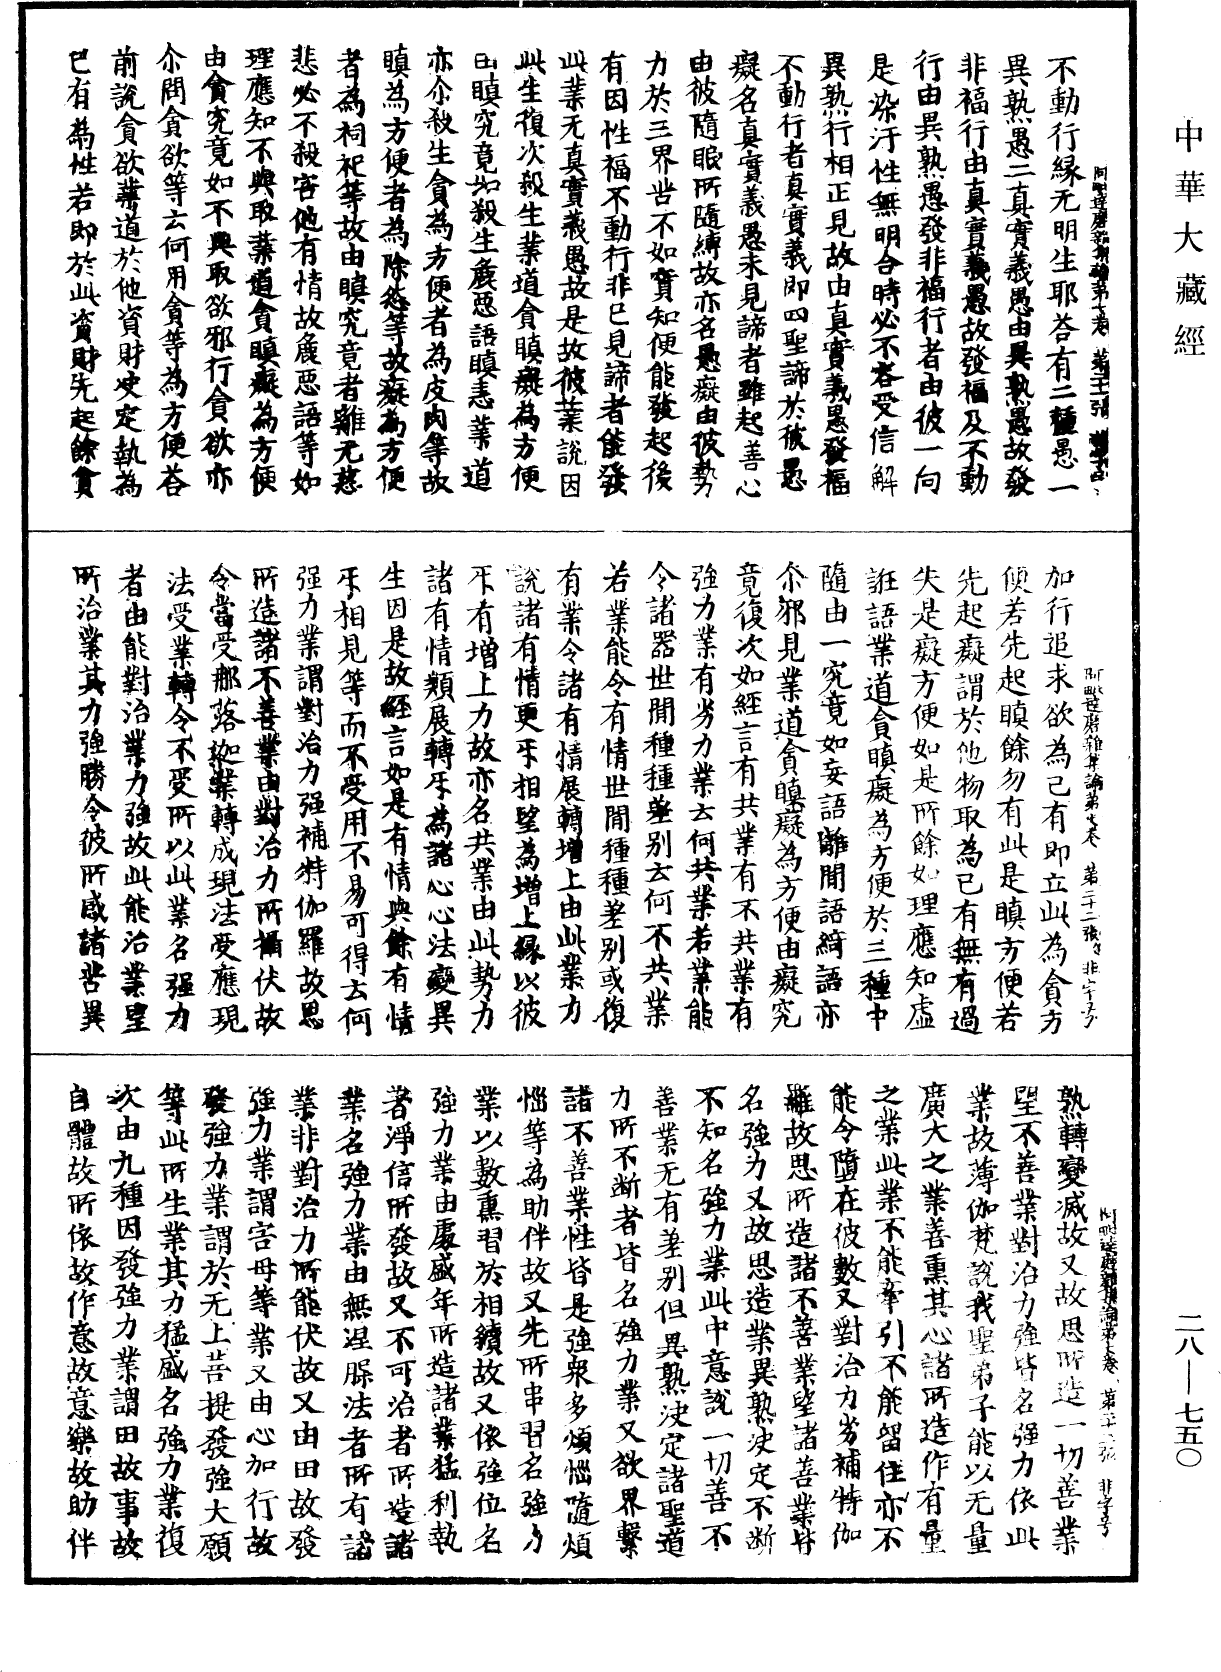 大乘阿毗达磨杂集论《中华大藏经》_第28册_第0750页